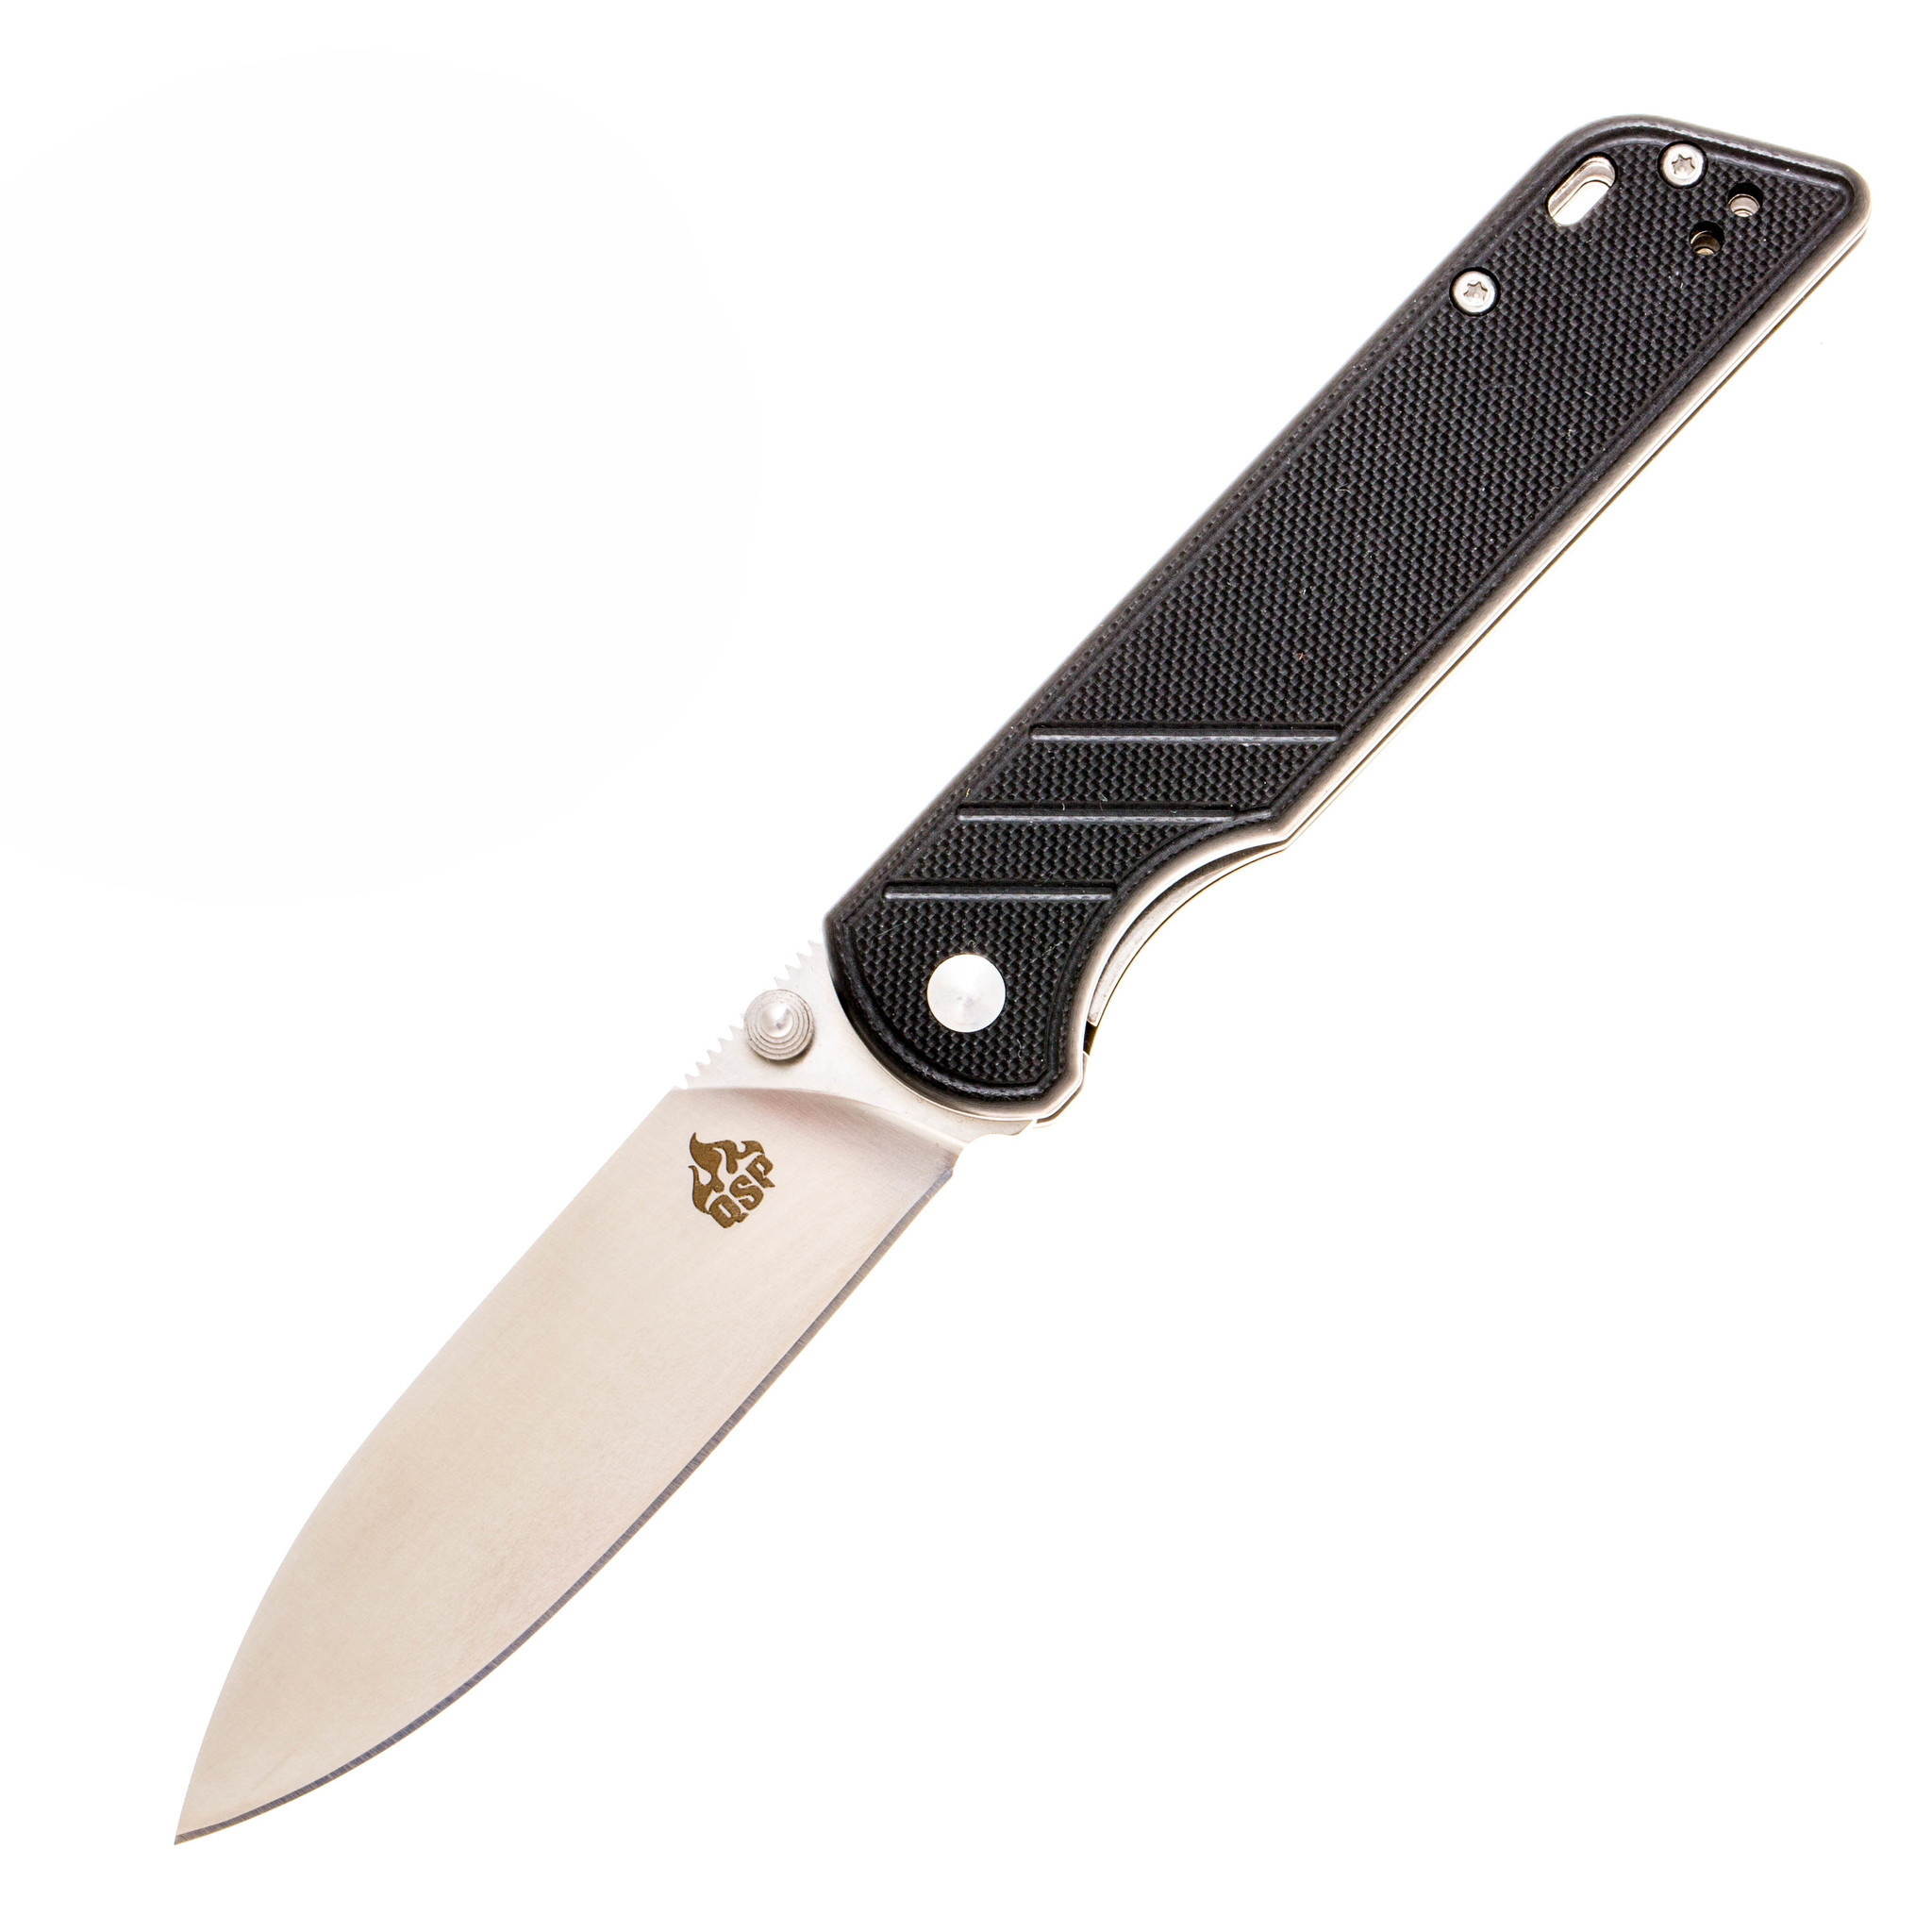 Складной нож QSP Parrot, сталь D2, рукоять G10, черный складной нож dagger parrot 3 0 all   g10